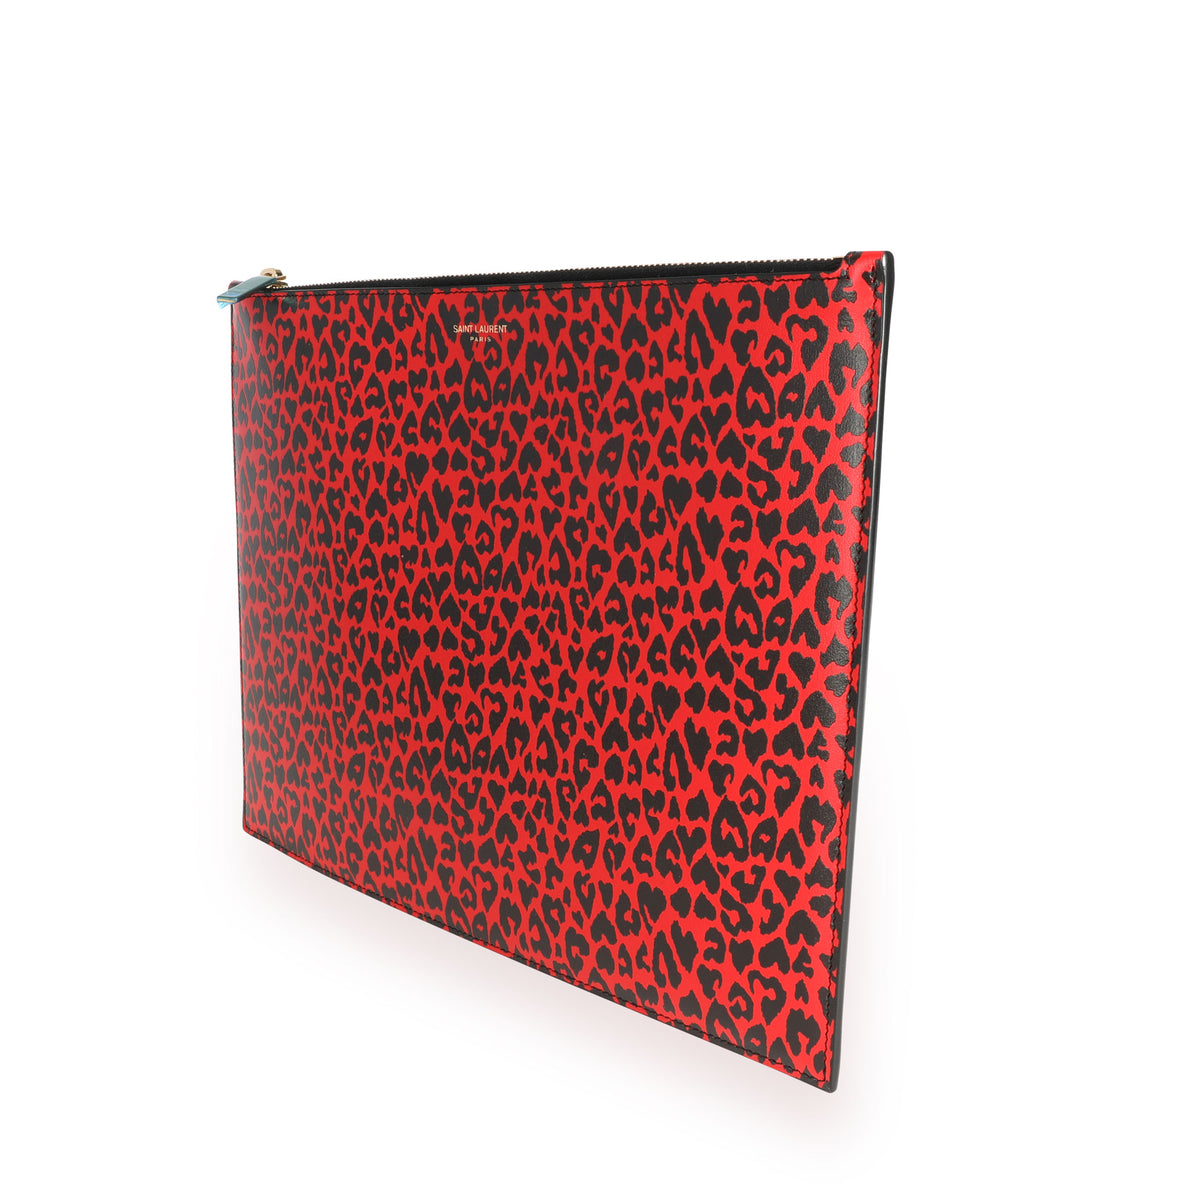 Saint Laurent Red & Black Leopard-Print Leather Large Zip Pouch